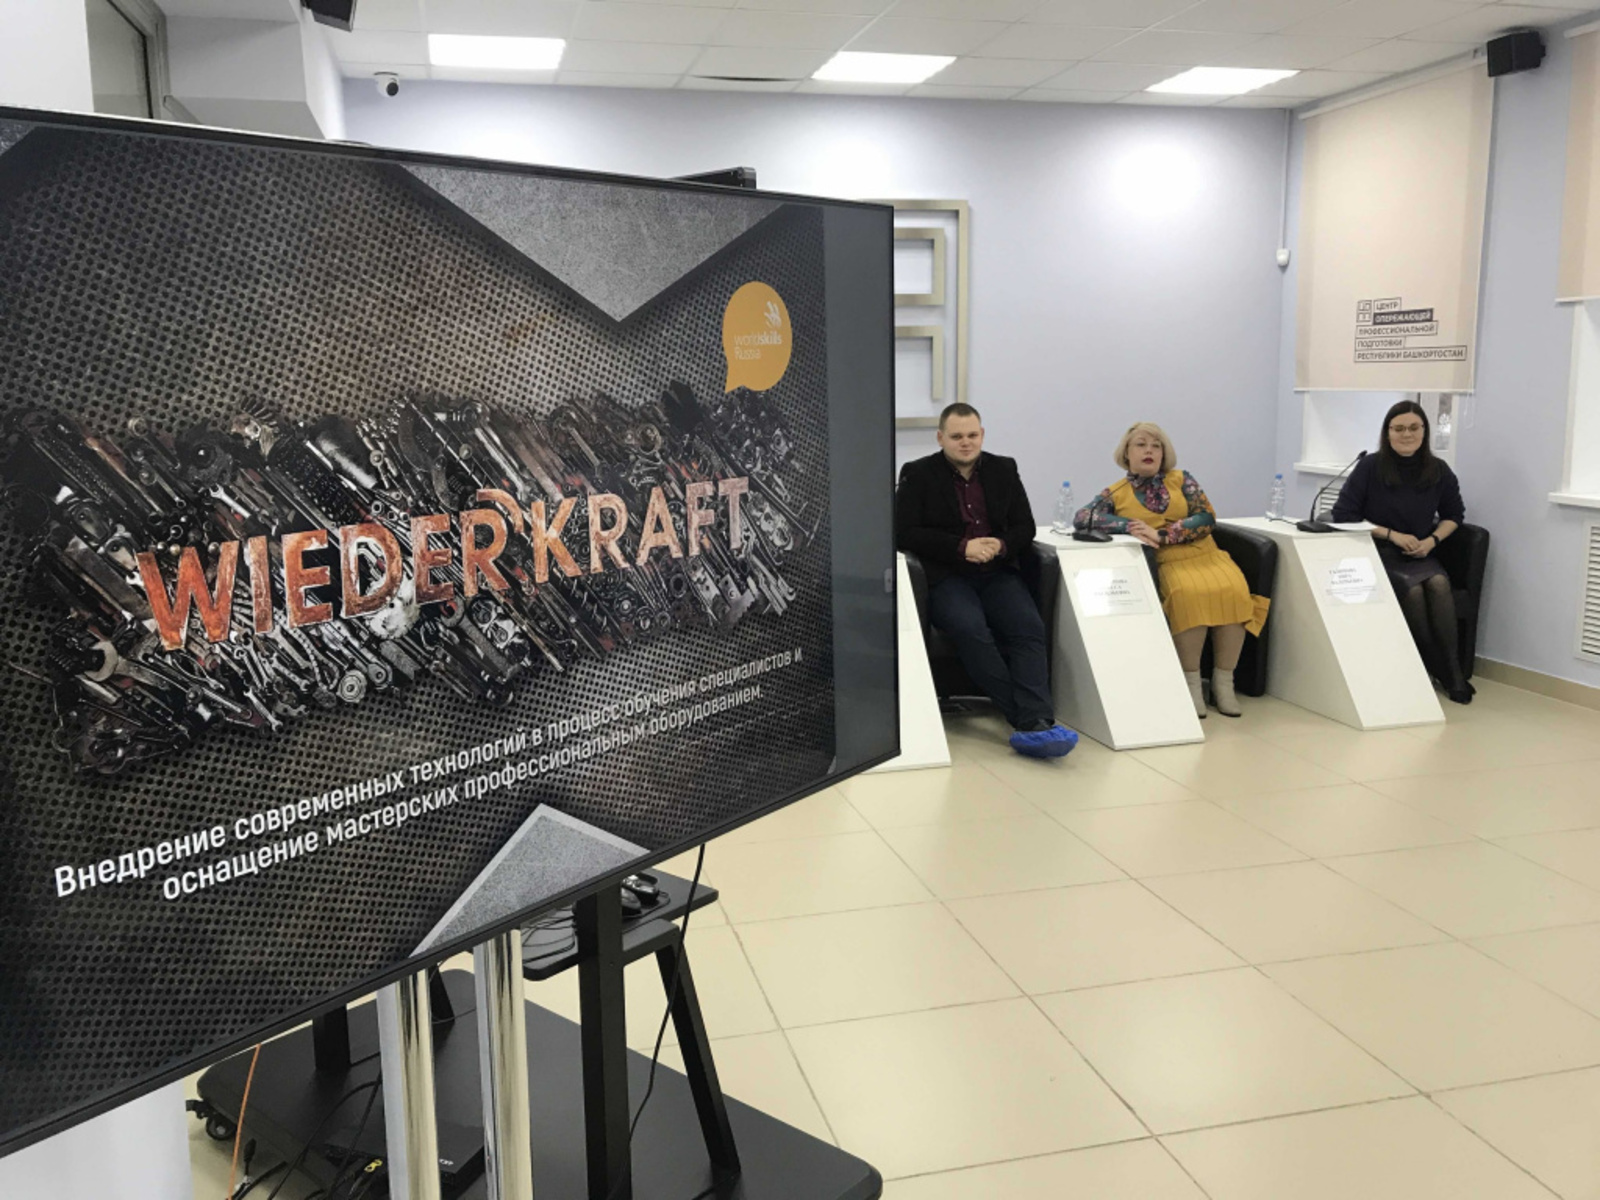 Нацпроект "Образование": В Башкортостане прошла стратегическая сессия с компанией WiederKraft